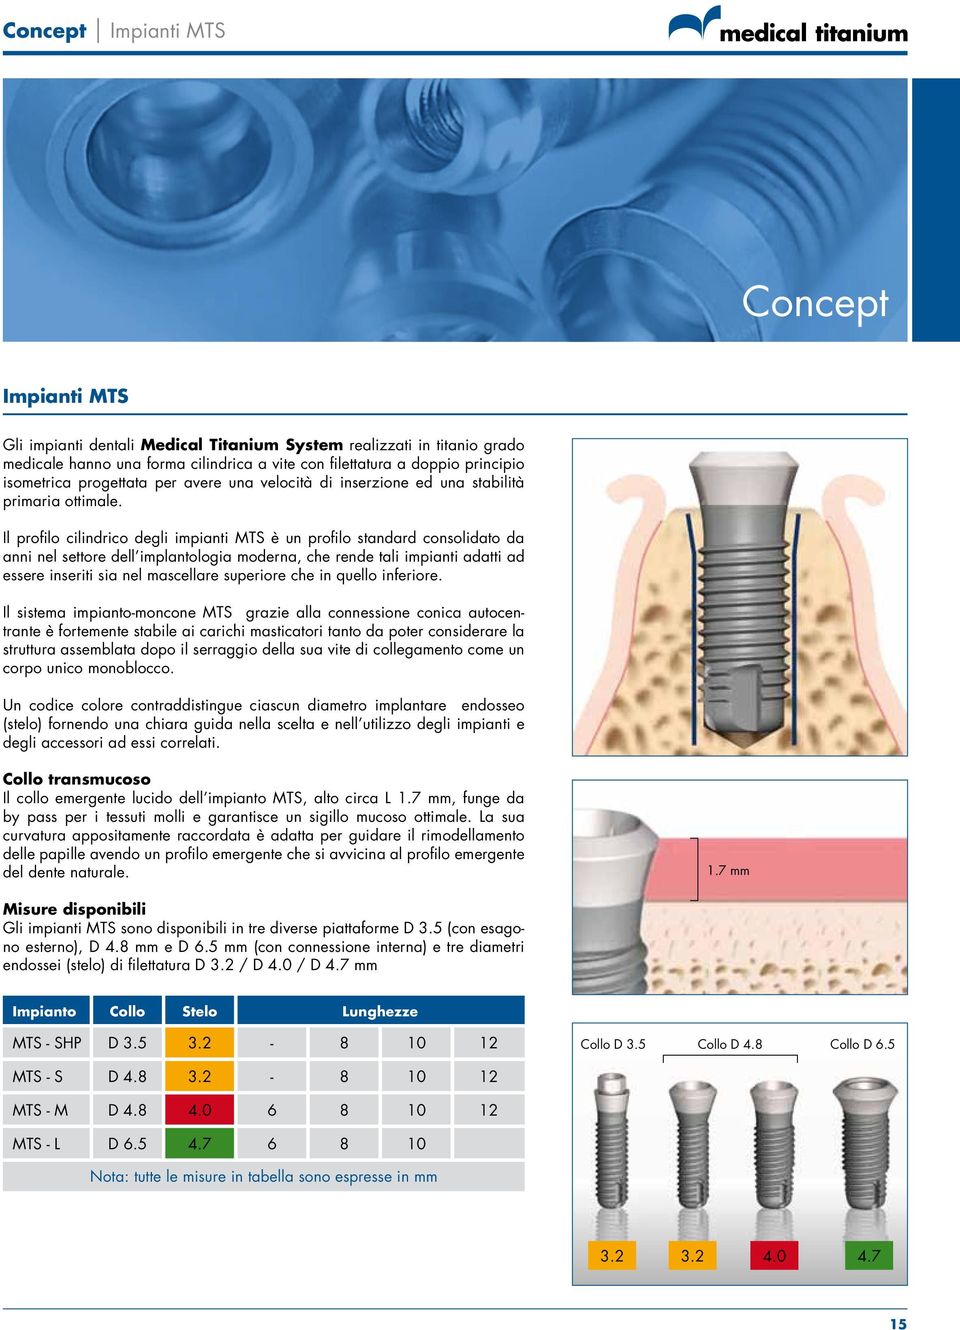 Il profilo cilindrico degli impianti MTS è un profilo standard consolidato da anni nel settore dell implantologia moderna, che rende tali impianti adatti ad essere inseriti sia nel mascellare